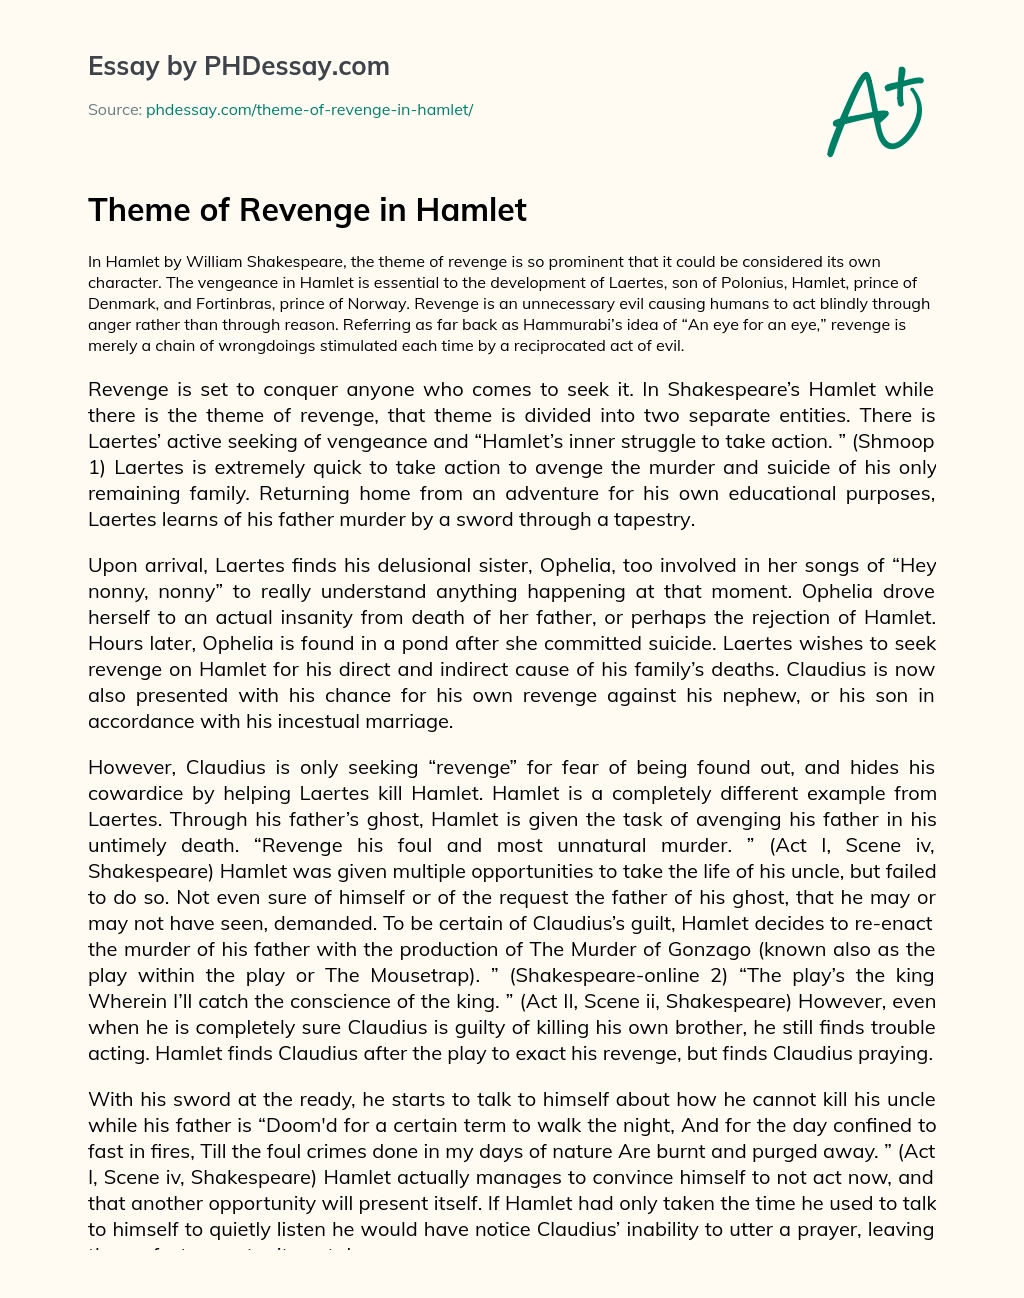 Theme of Revenge in Hamlet essay